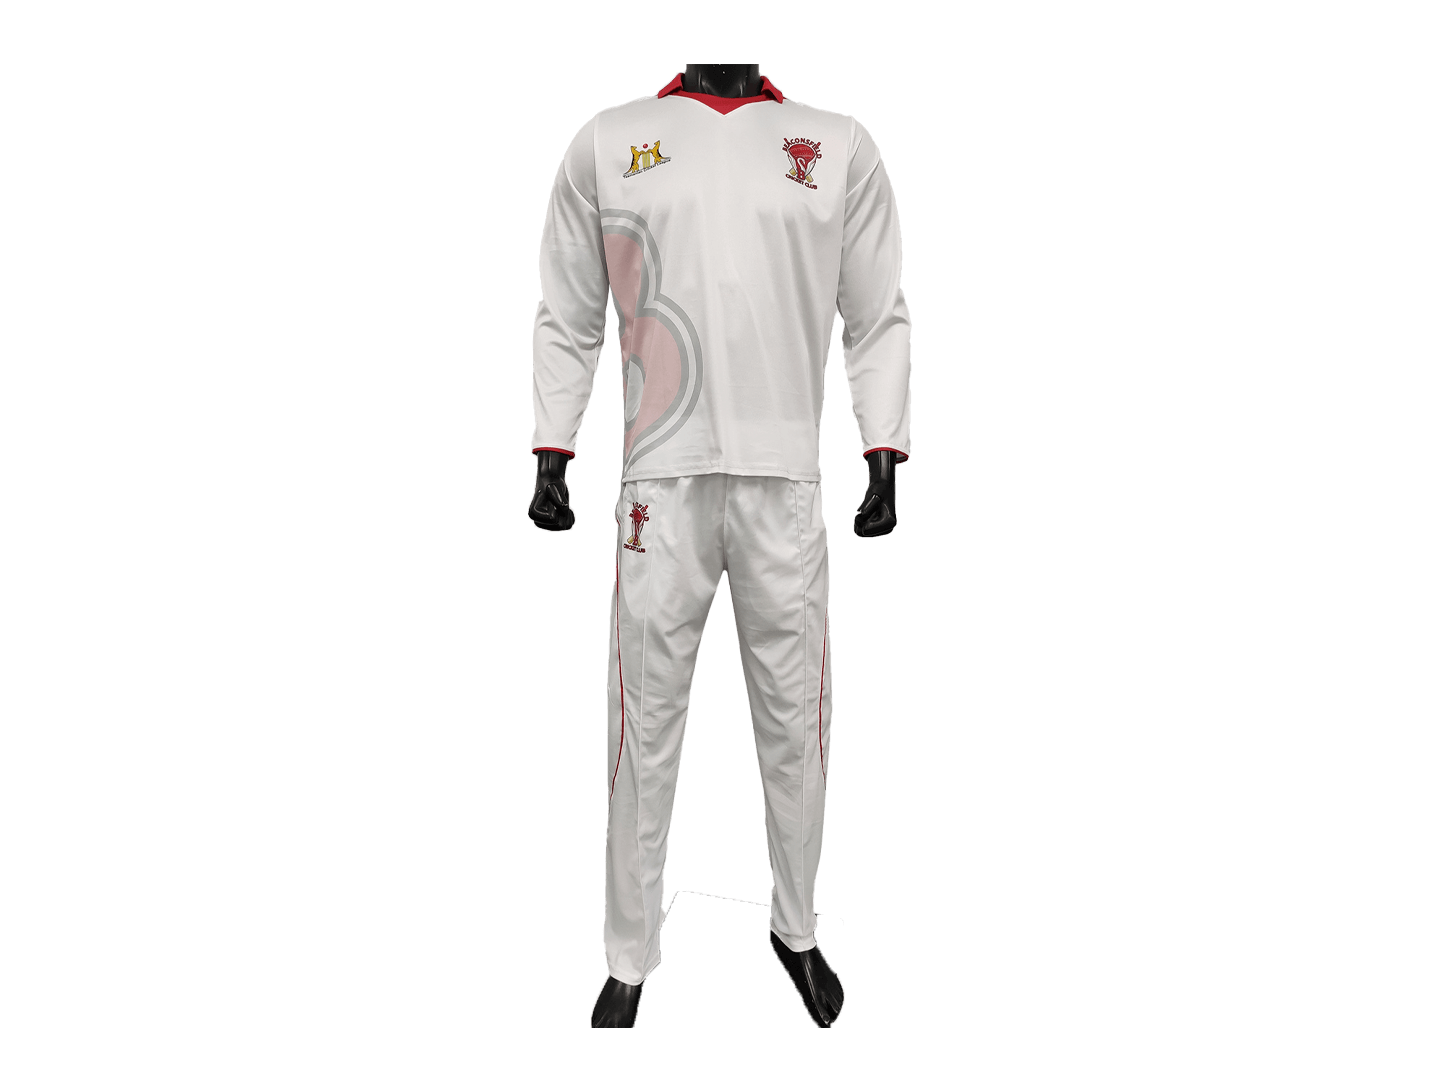 Cricket Long Sleeve Shirt Sports Apparel Manufacturer